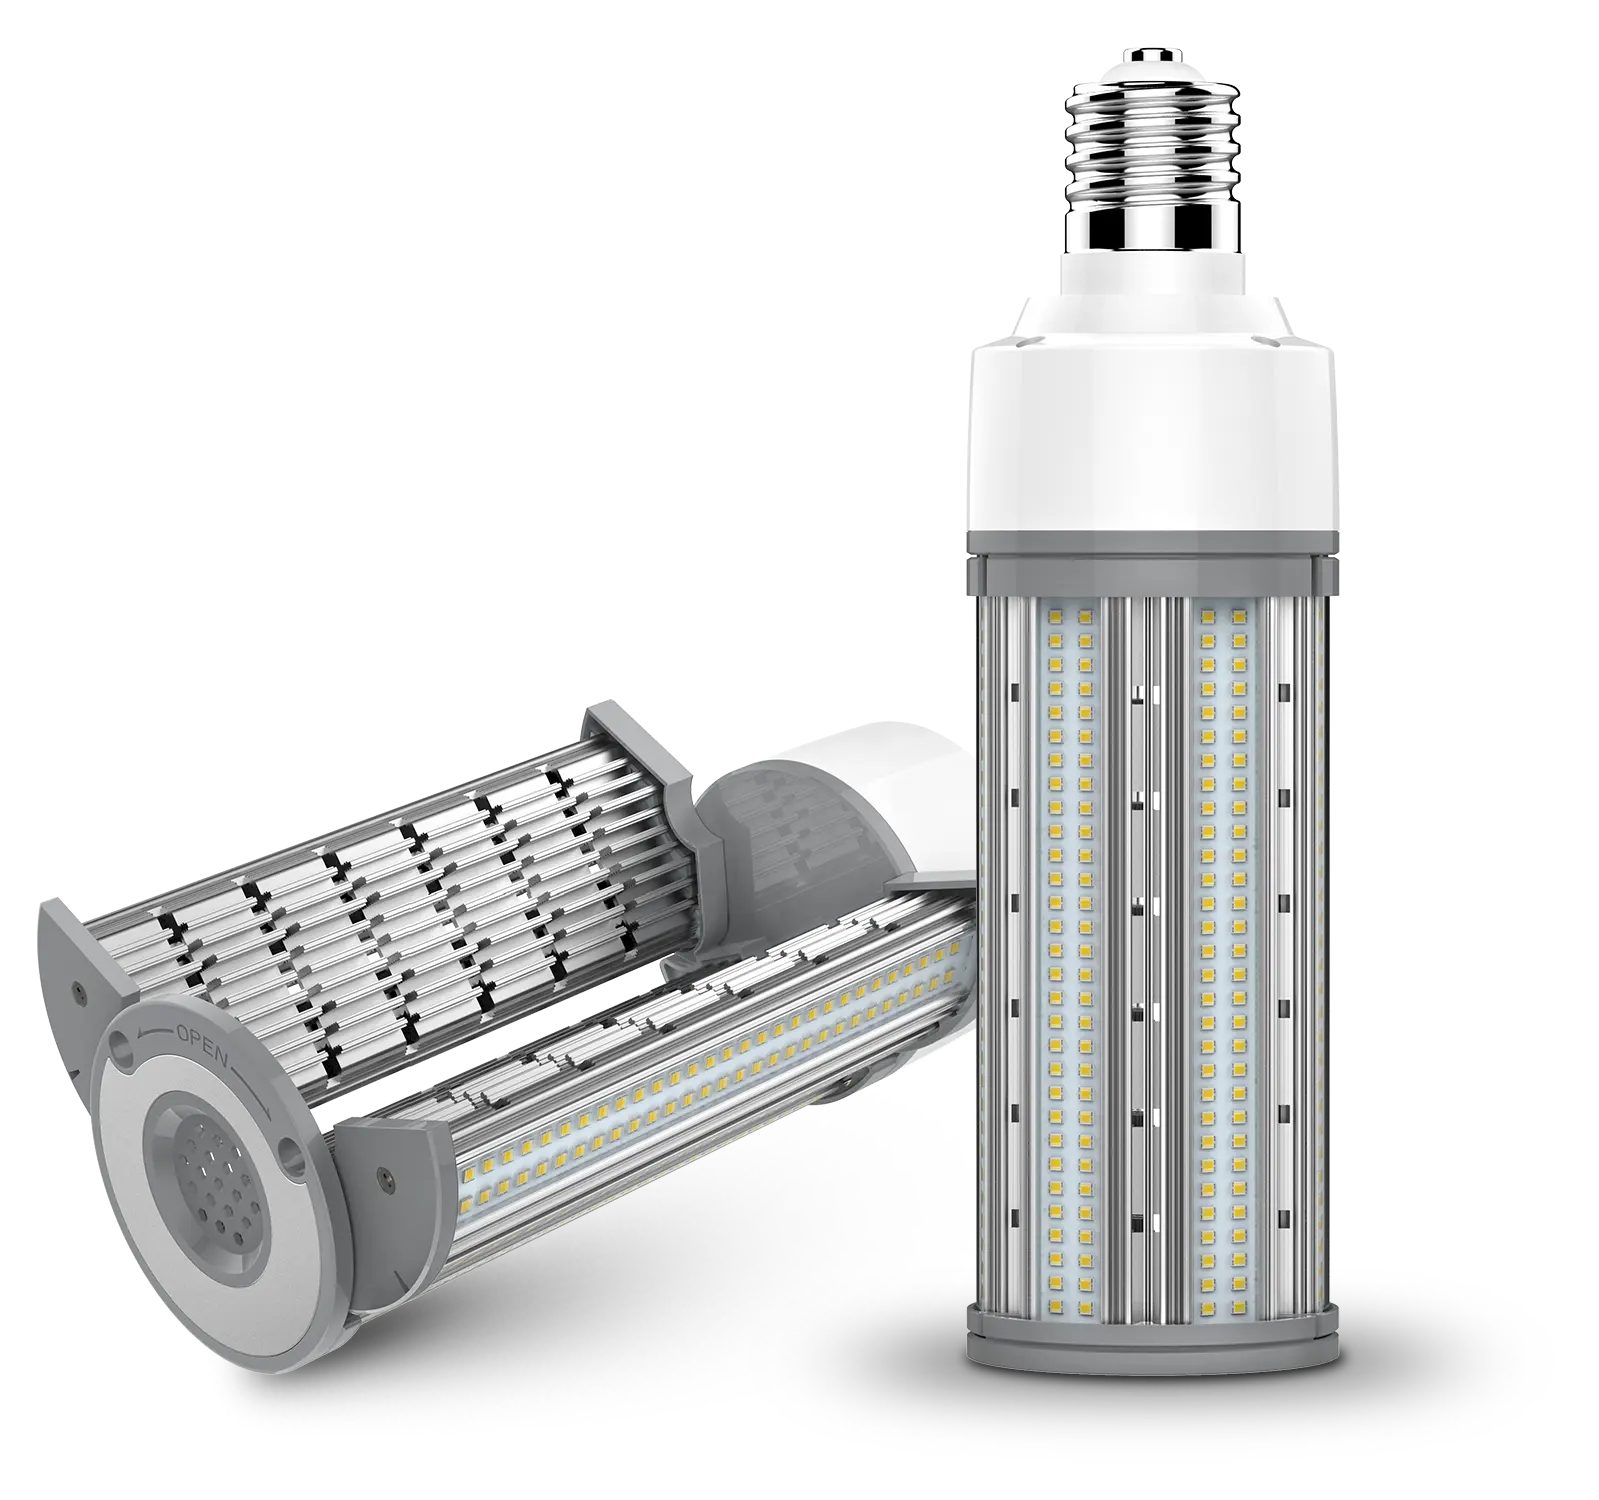 new style Flame retardant material 27w 45w 63w corn led light bulbs made in china E27 E26 e39 e40 led street bulb for outdoor